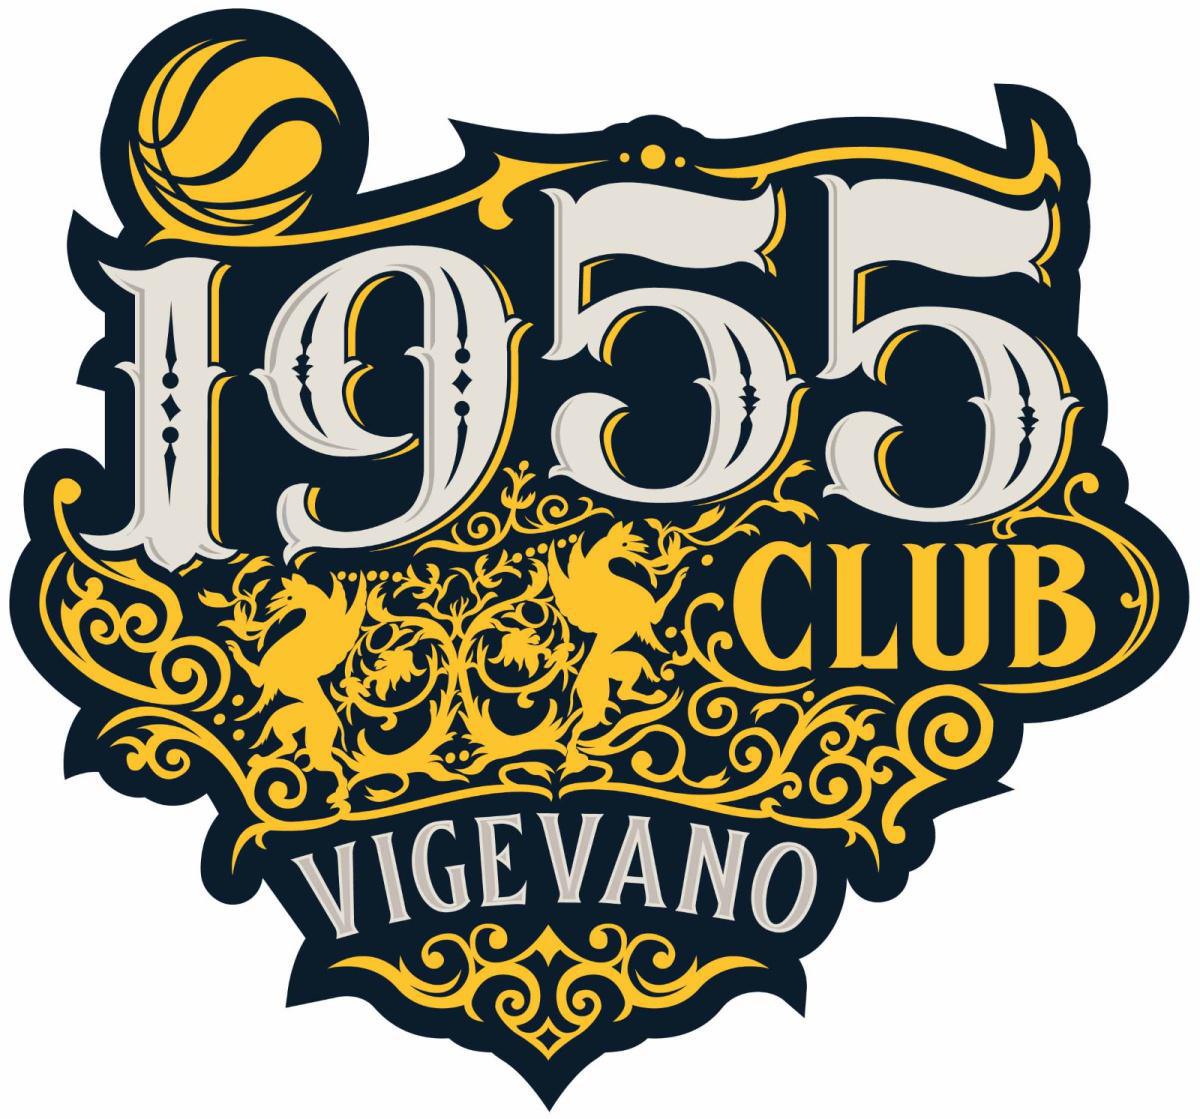 Mercoledi 31 gennaio riprendono gli incontri del Club 1955 per gli sponsor di Vigevano 1955 